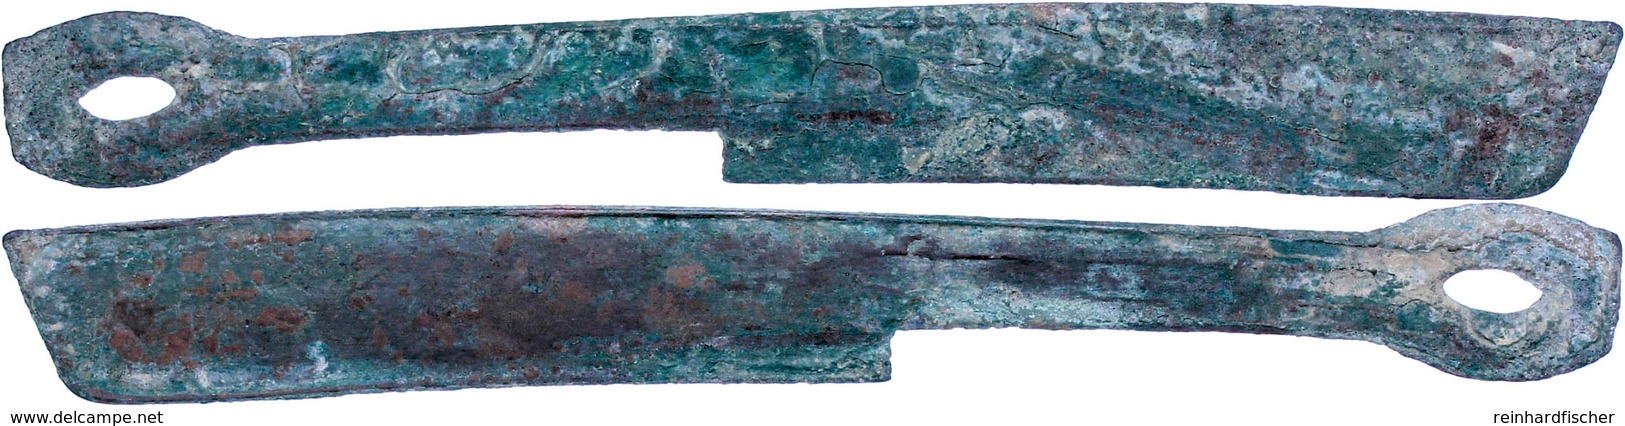 Zhou-Dynastie, 1122-220 V. Chr., Æ-Messergeld (10,81g), Sog. Strait Knive Money, 400-250 V. Chr., Vgl. Opitz S. 186, Sch - Cina